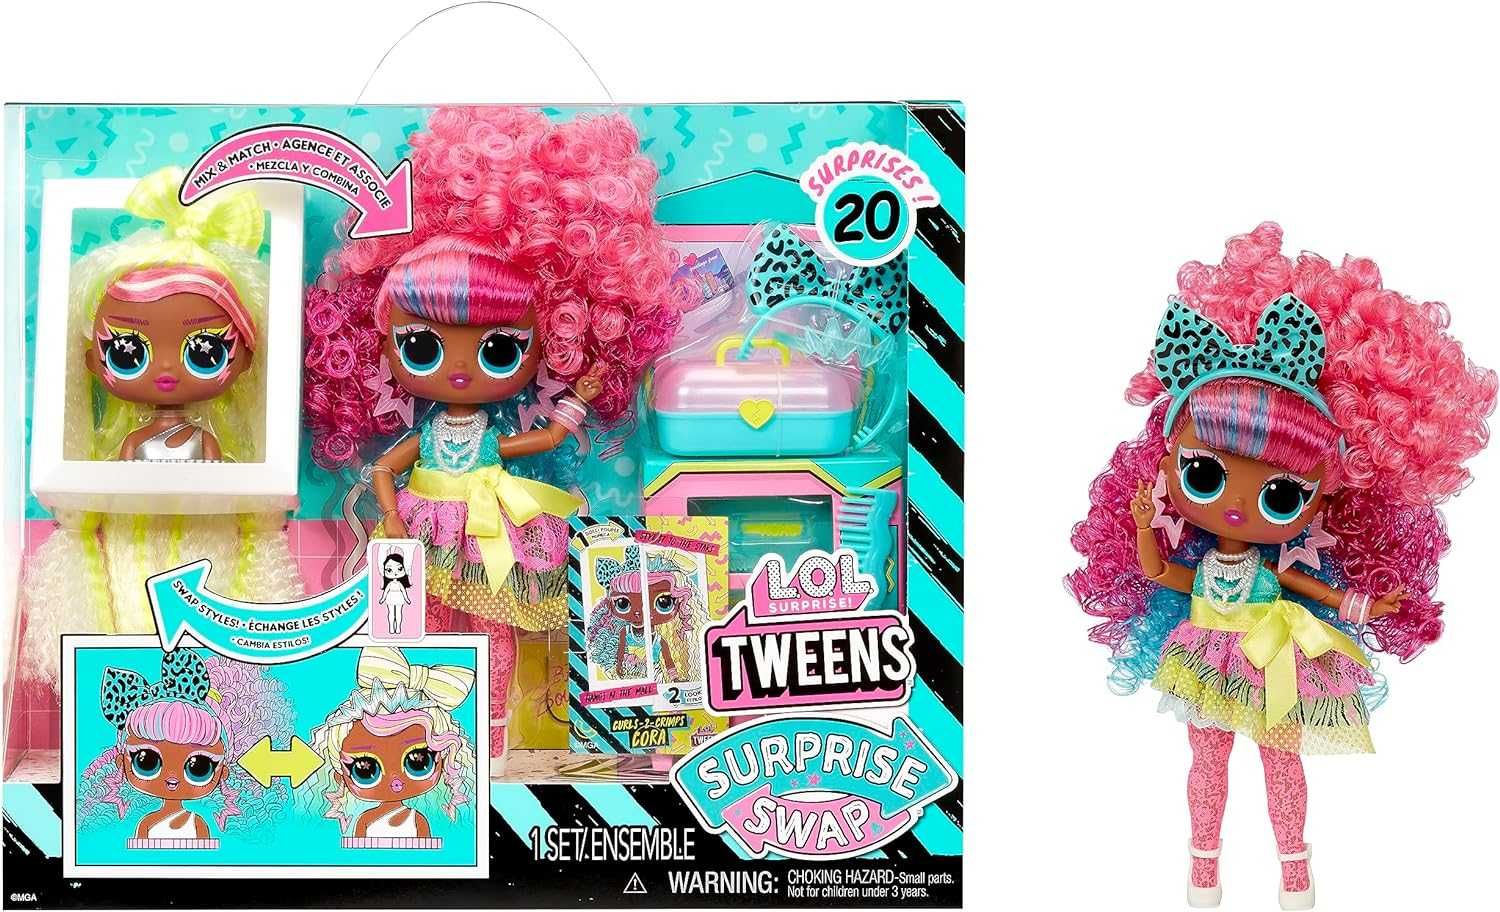 L.O.L. Surprise! Tweens Surprise Swap Fashion Doll Buns-2-Braids